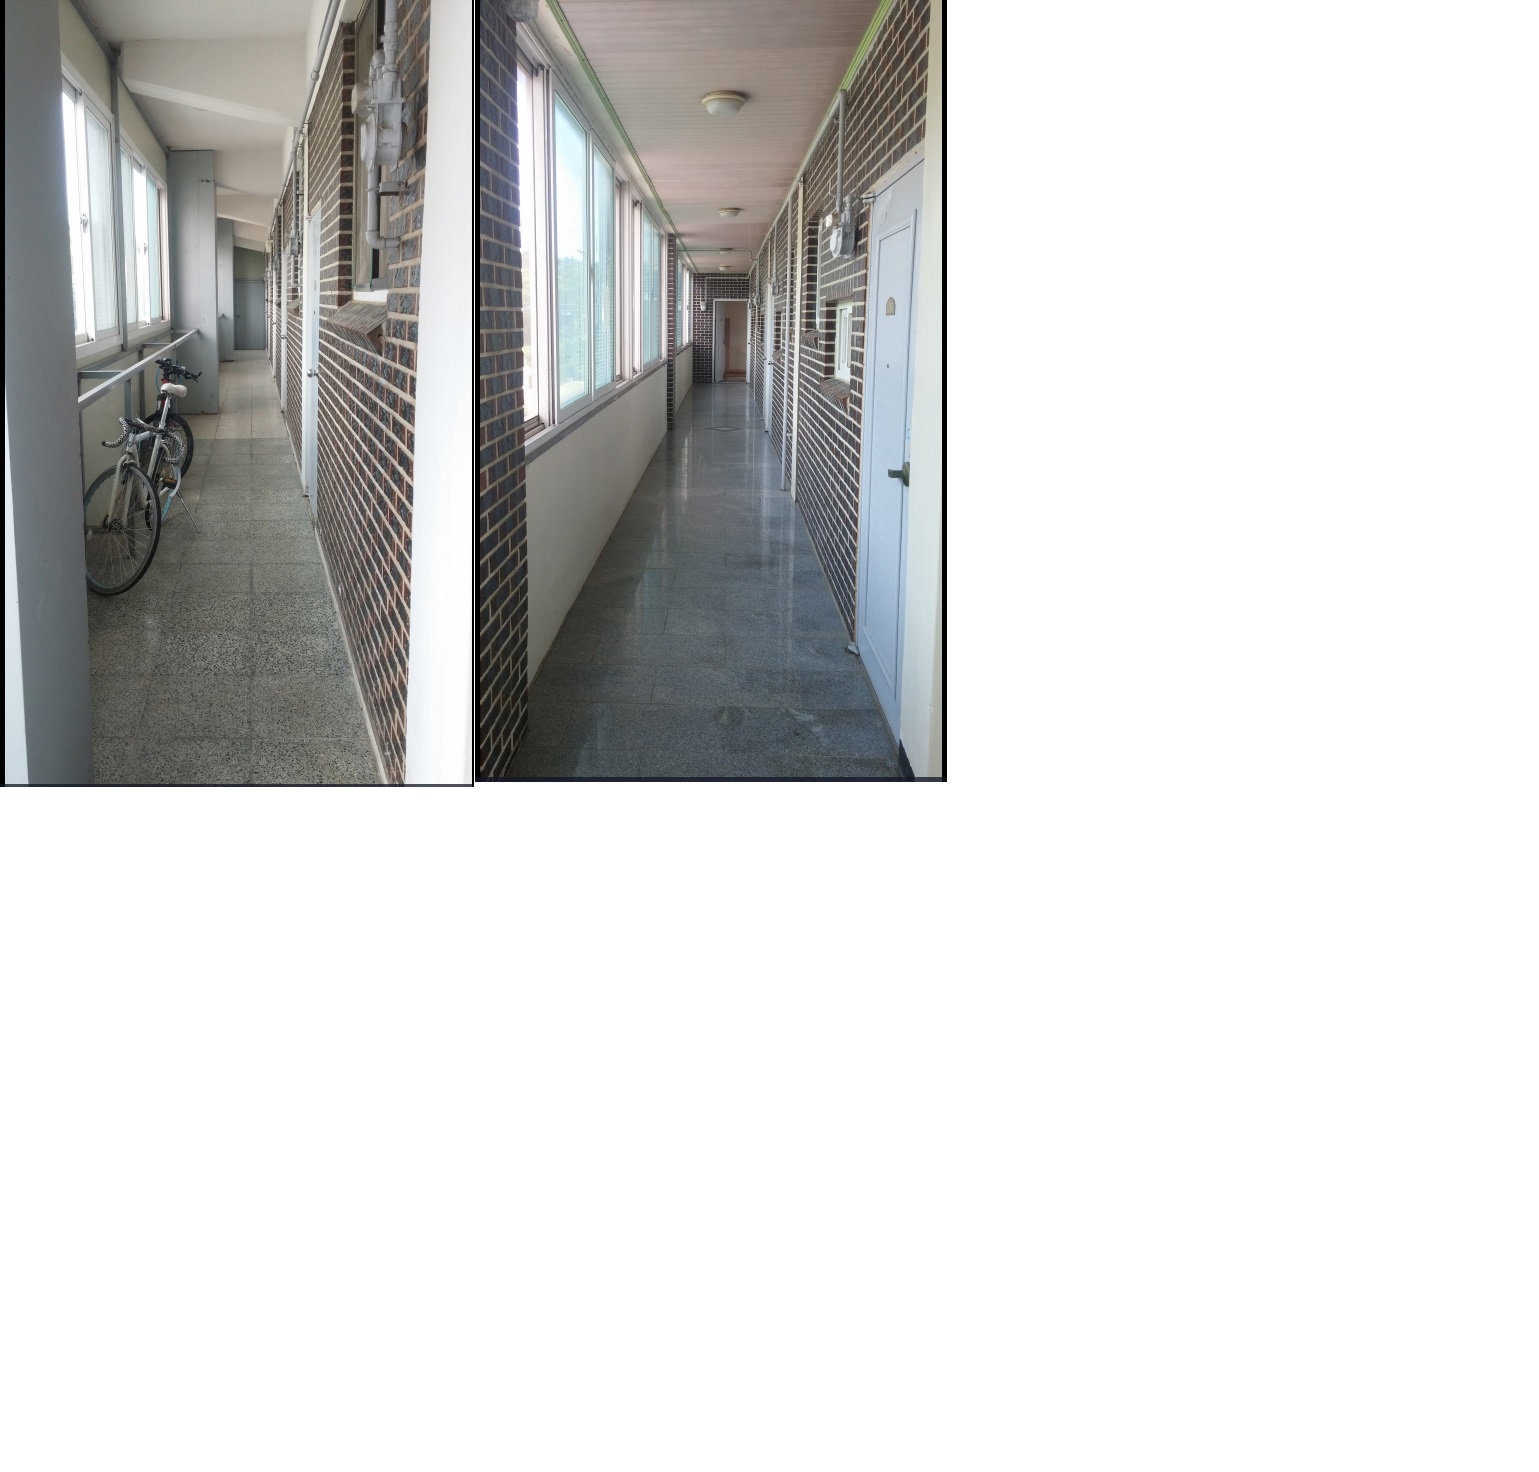 착한가격, 깨끗한 시설의 한국원룸 입니다. 이미지(4)